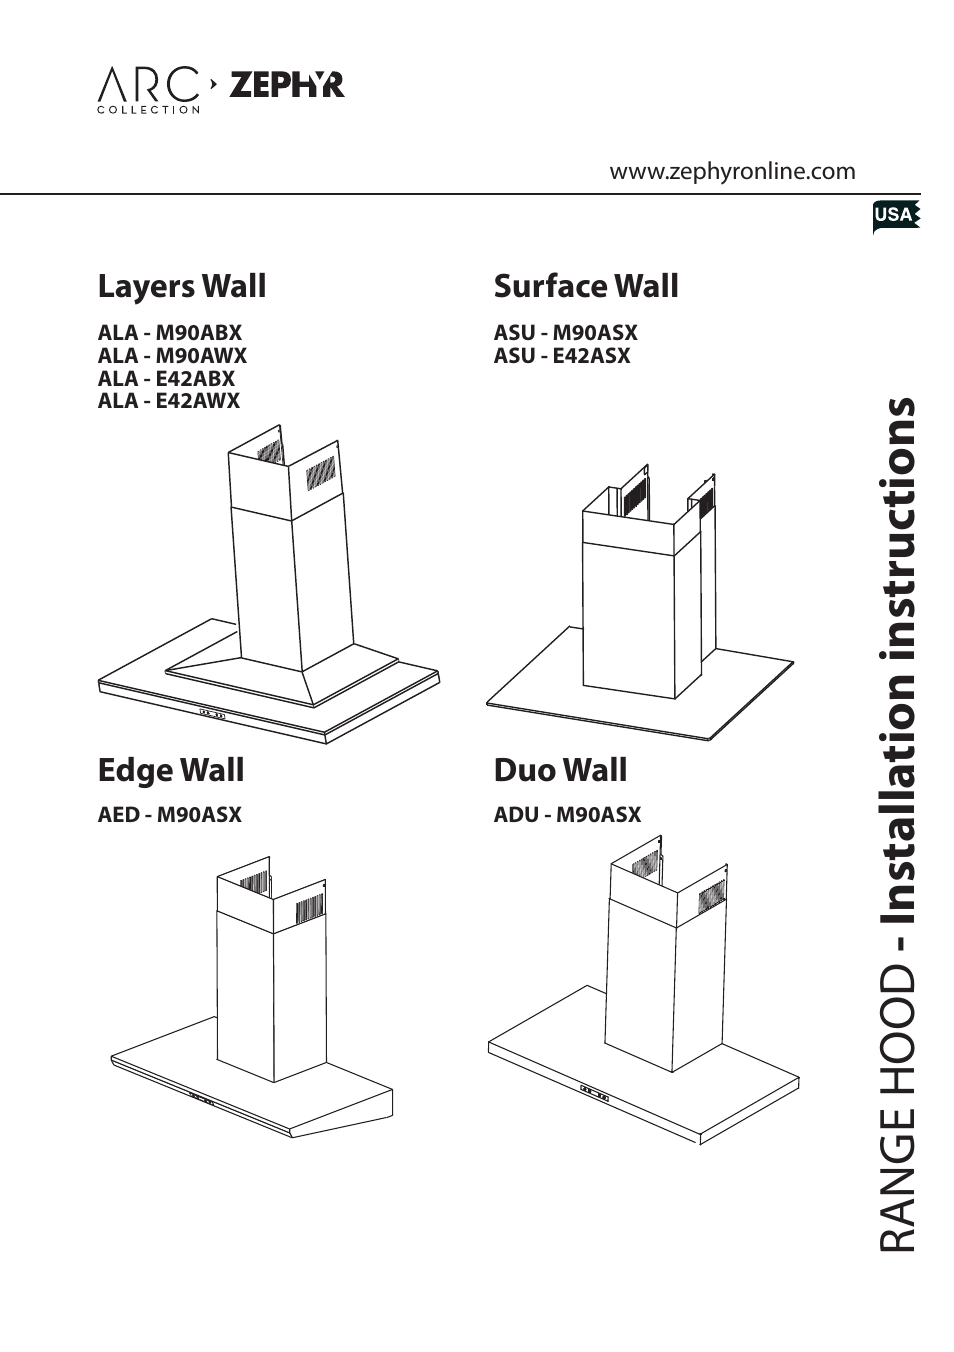 Edge Wall AED - M90ASX